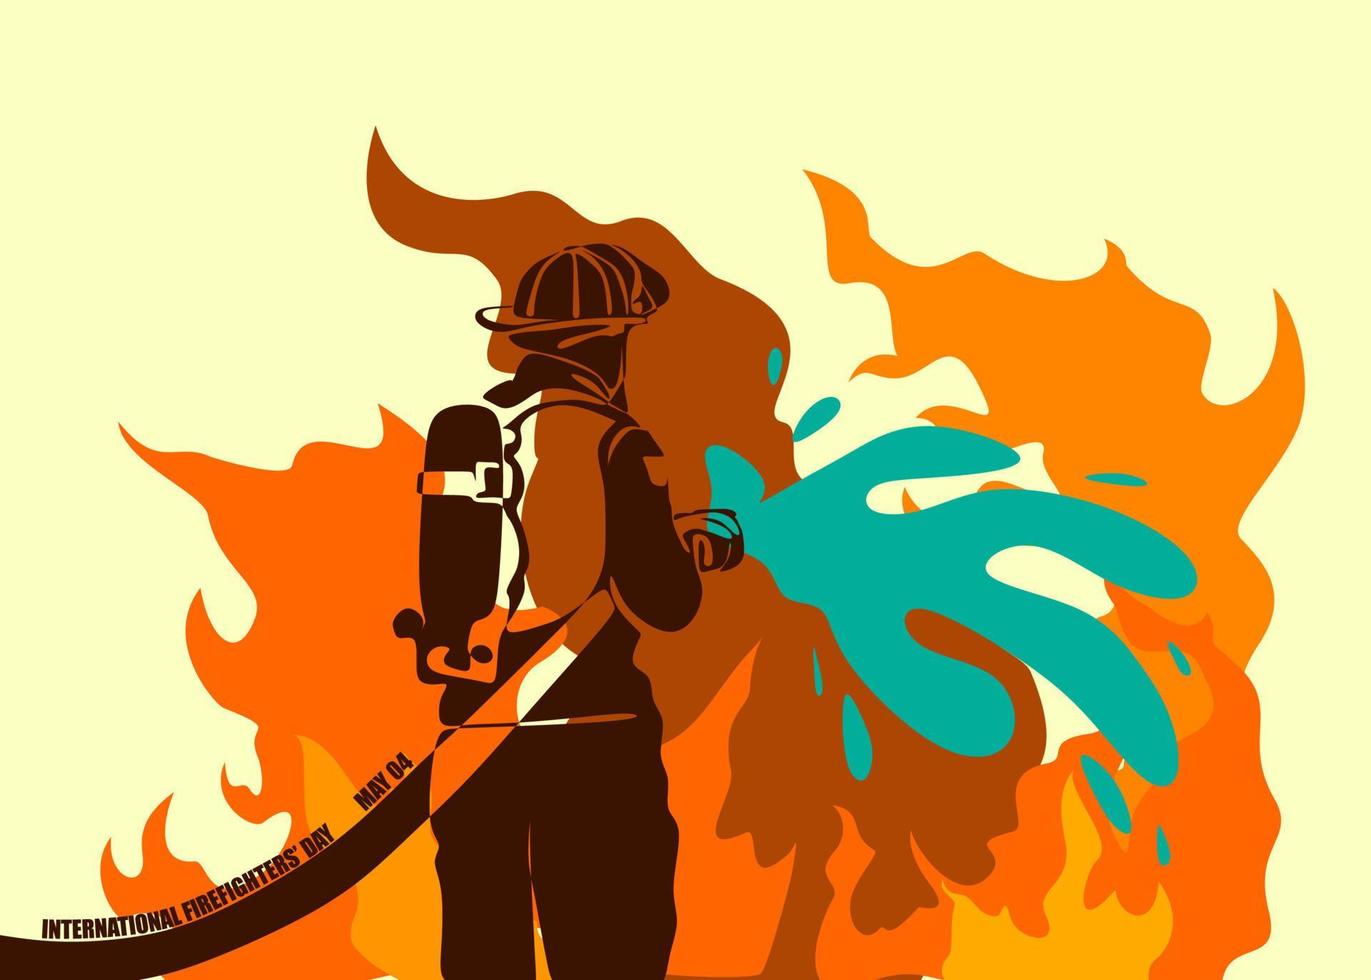 diseño conceptual del día internacional de los bomberos. ilustración vectorial de silueta de bombero, como pancarta, afiche o plantilla para el día internacional de los bomberos con letras, fuego y llamas. vector